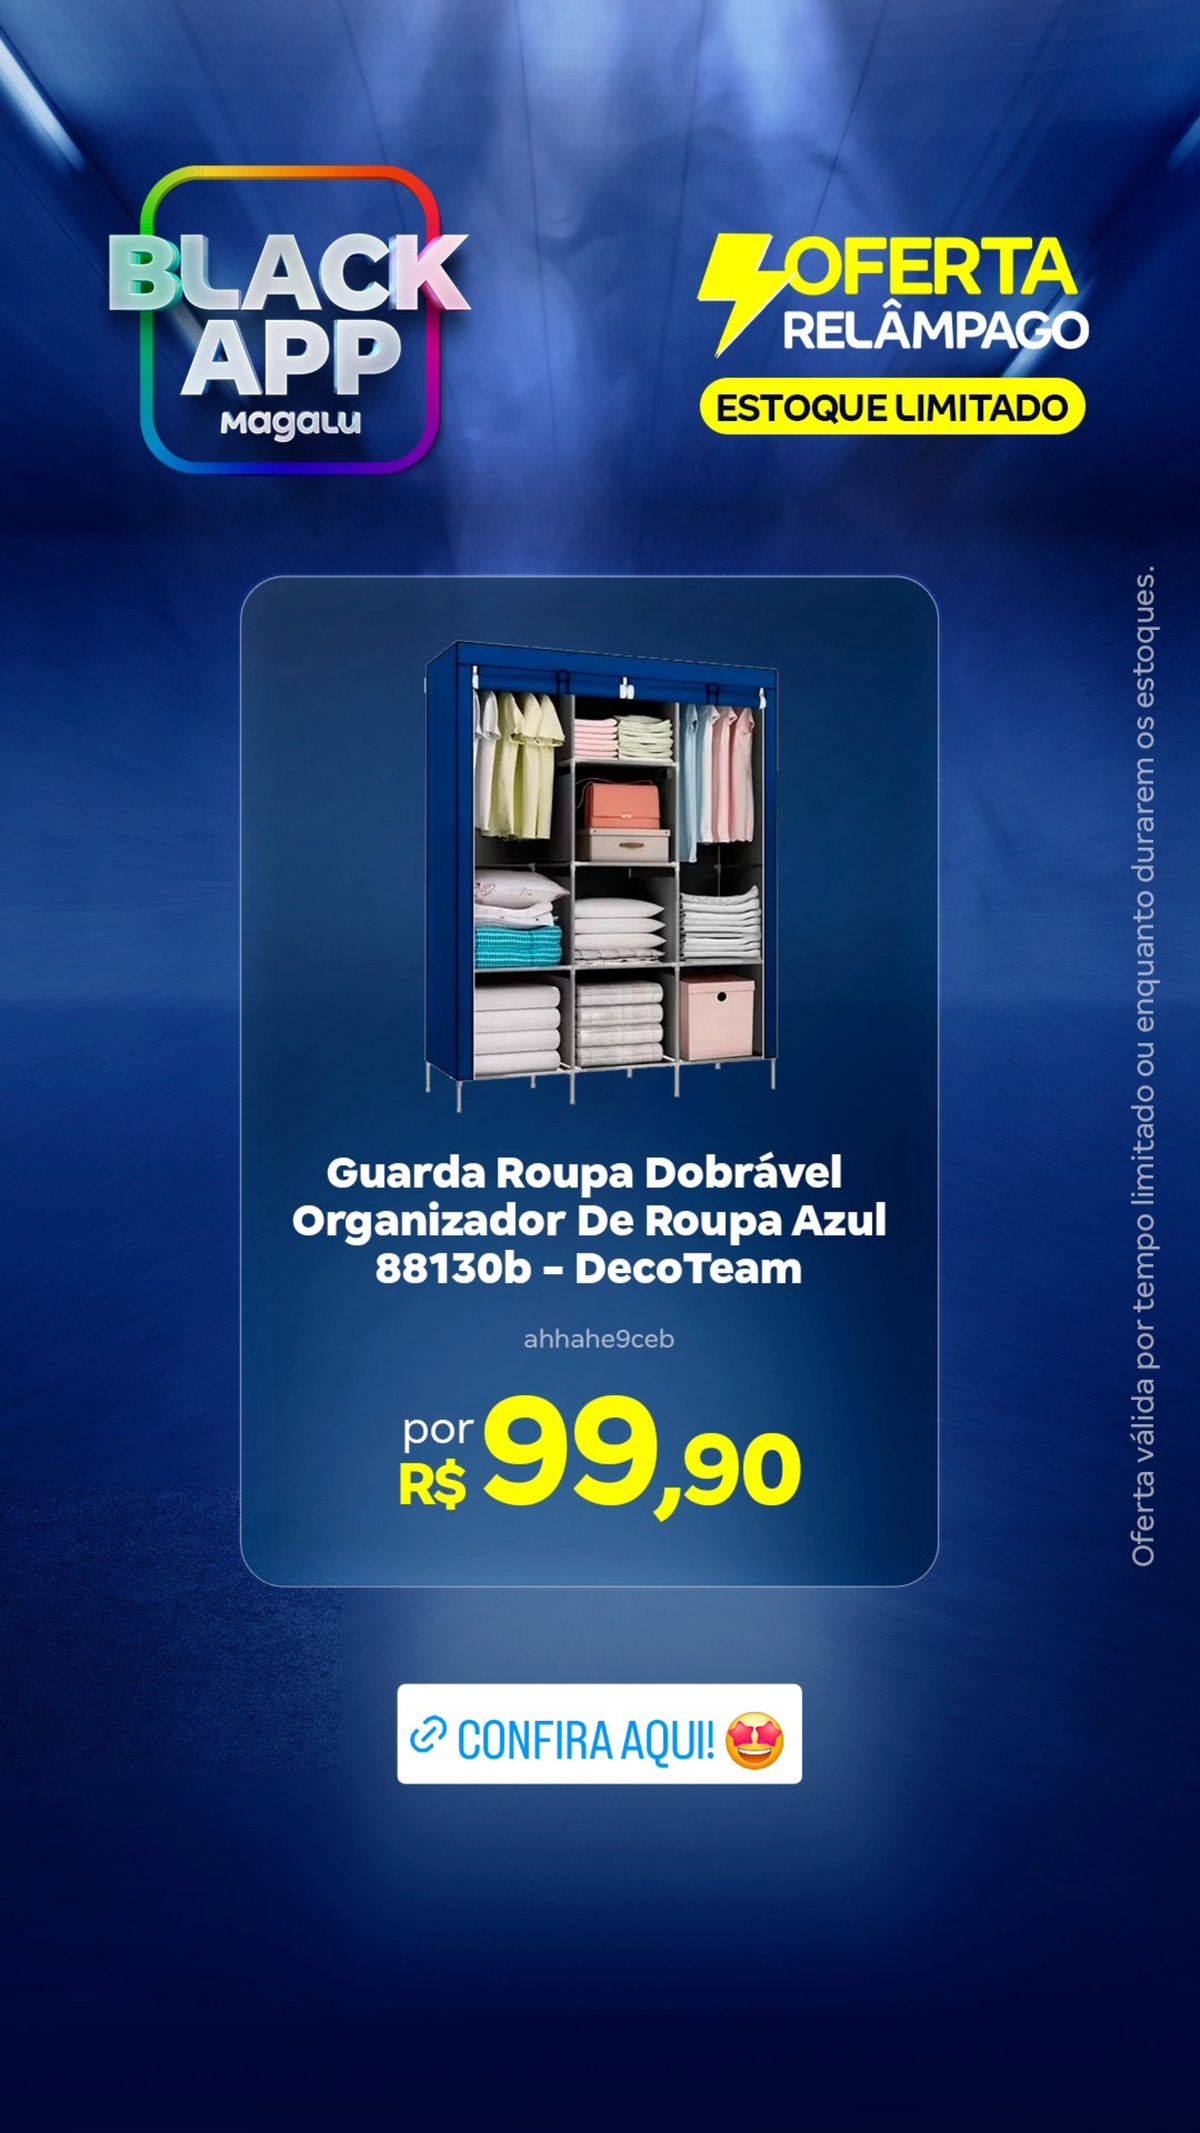 Guarda Roupa Dobrável e Organizador de Roupa Azul por R$99,90